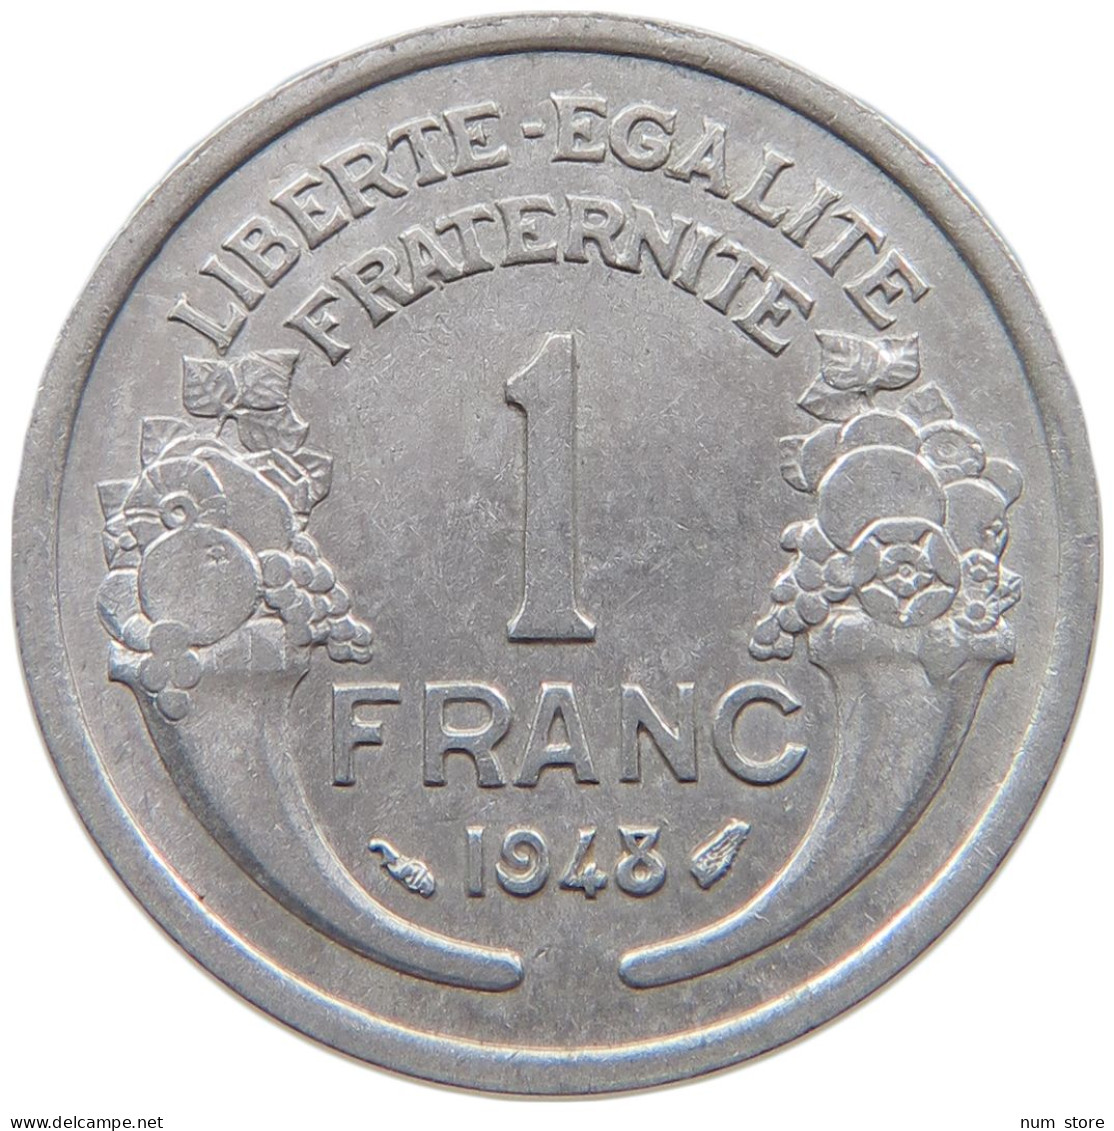 FRANCE 1 FRANC 1948 TOP #a060 0209 - 1 Franc